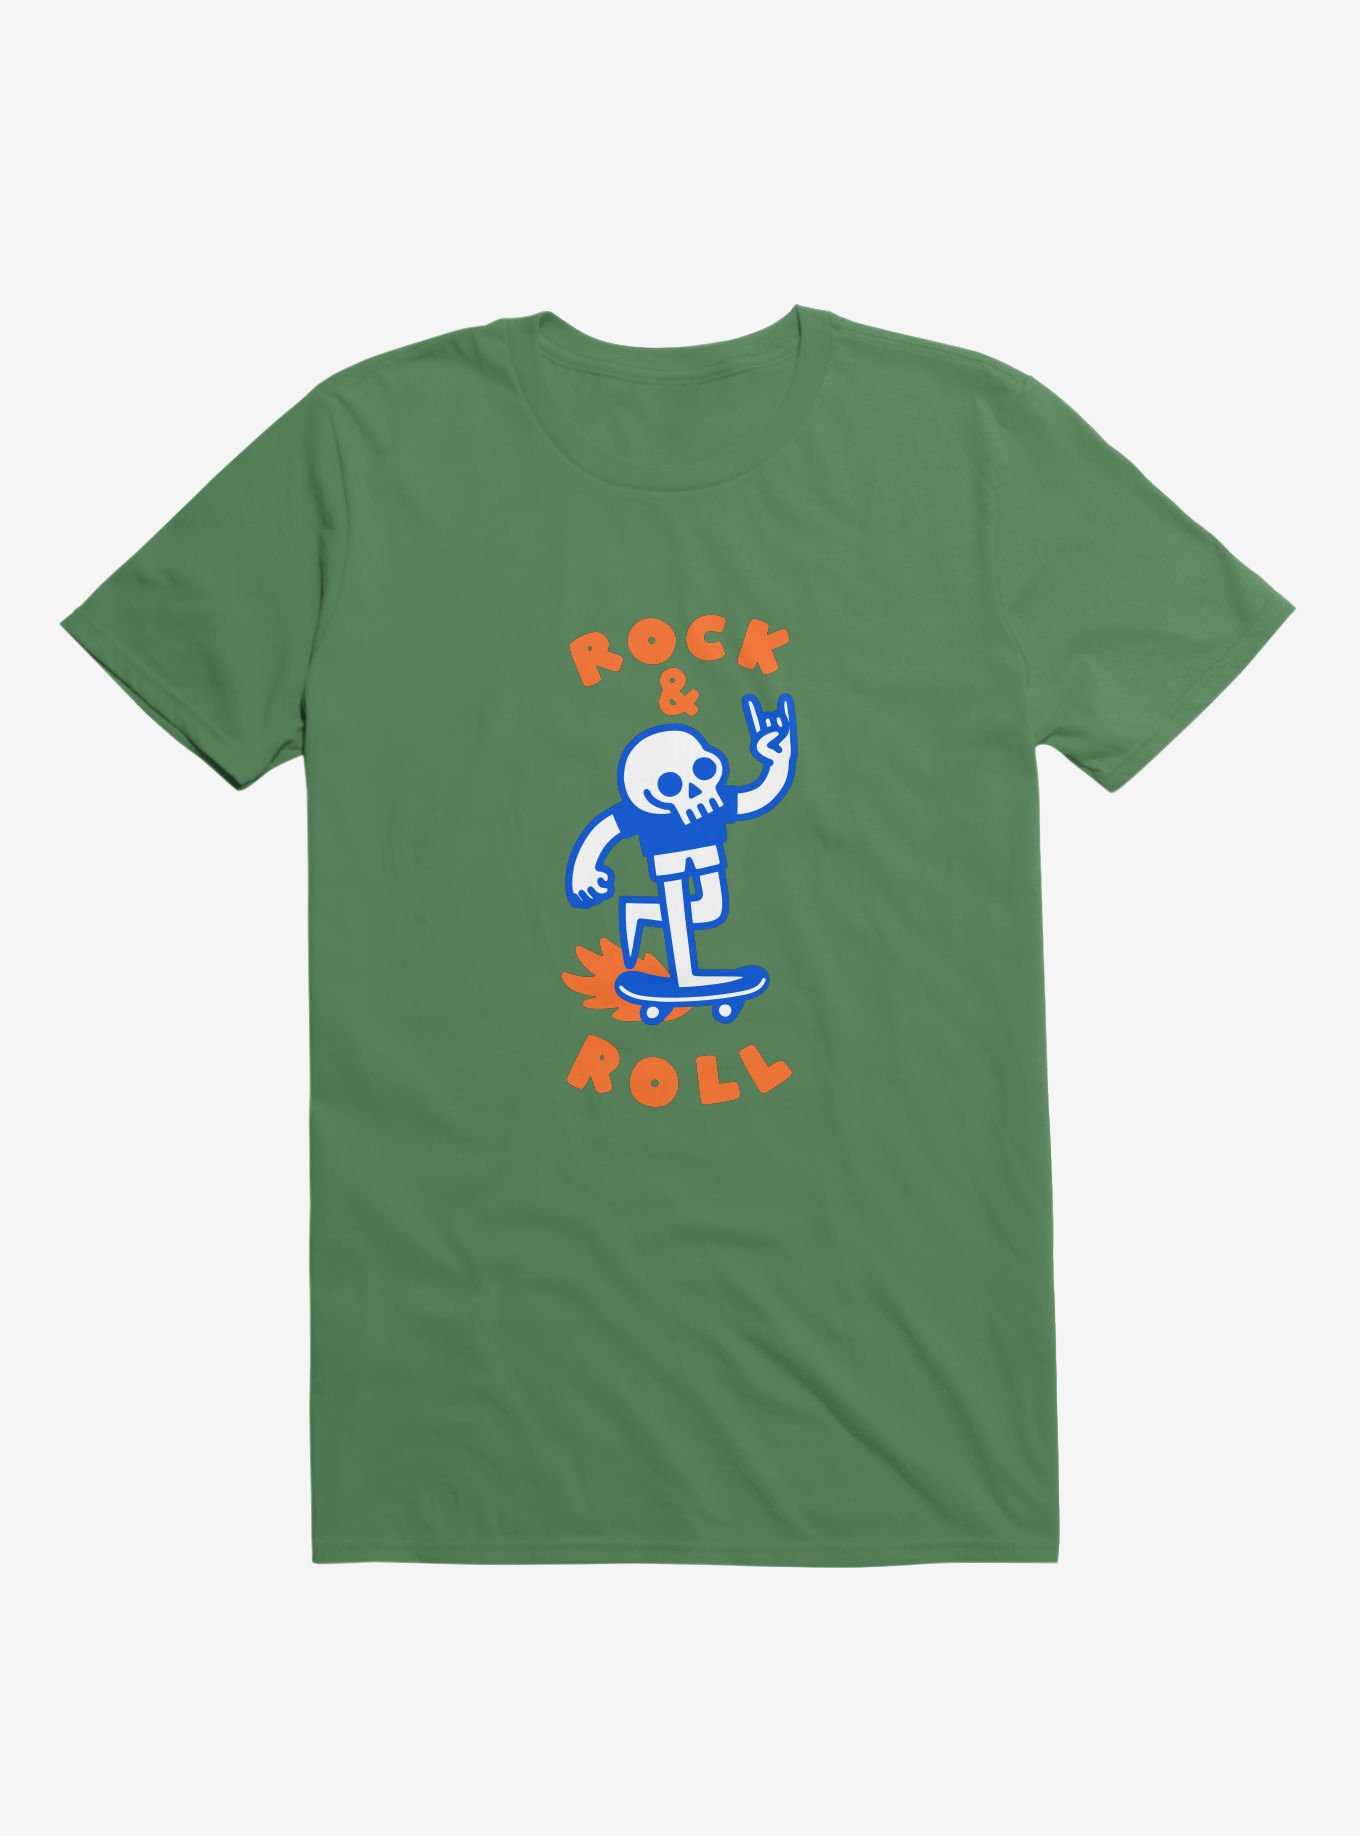 Rock & Roll Skull Kelly Green T-Shirt, , hi-res